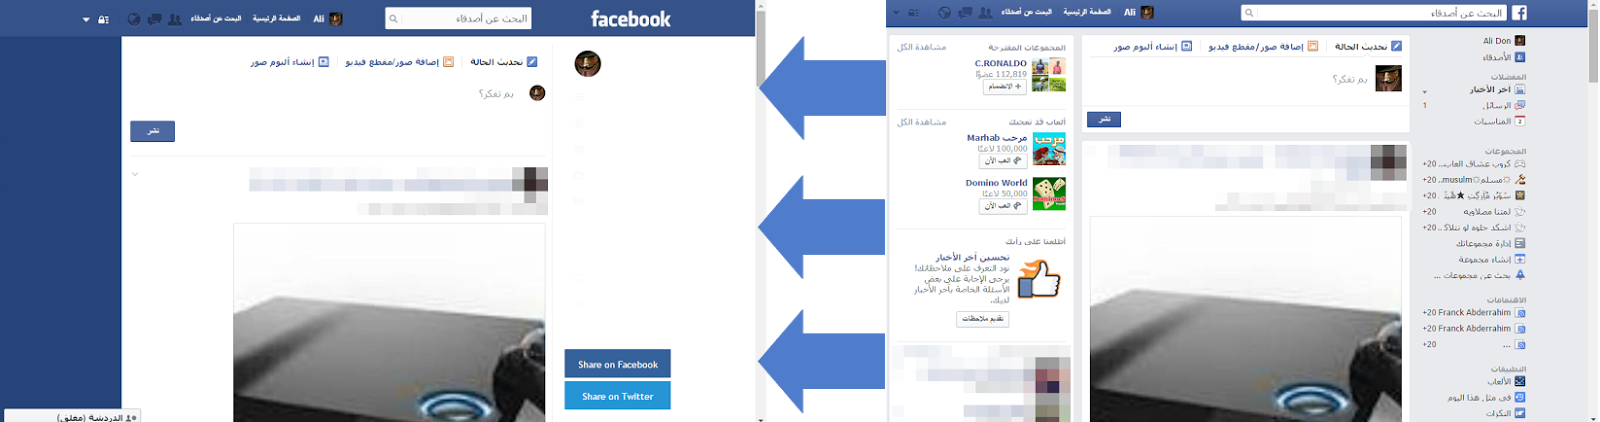 تغير شكل الفيس بوك الى التصميم جديد 1